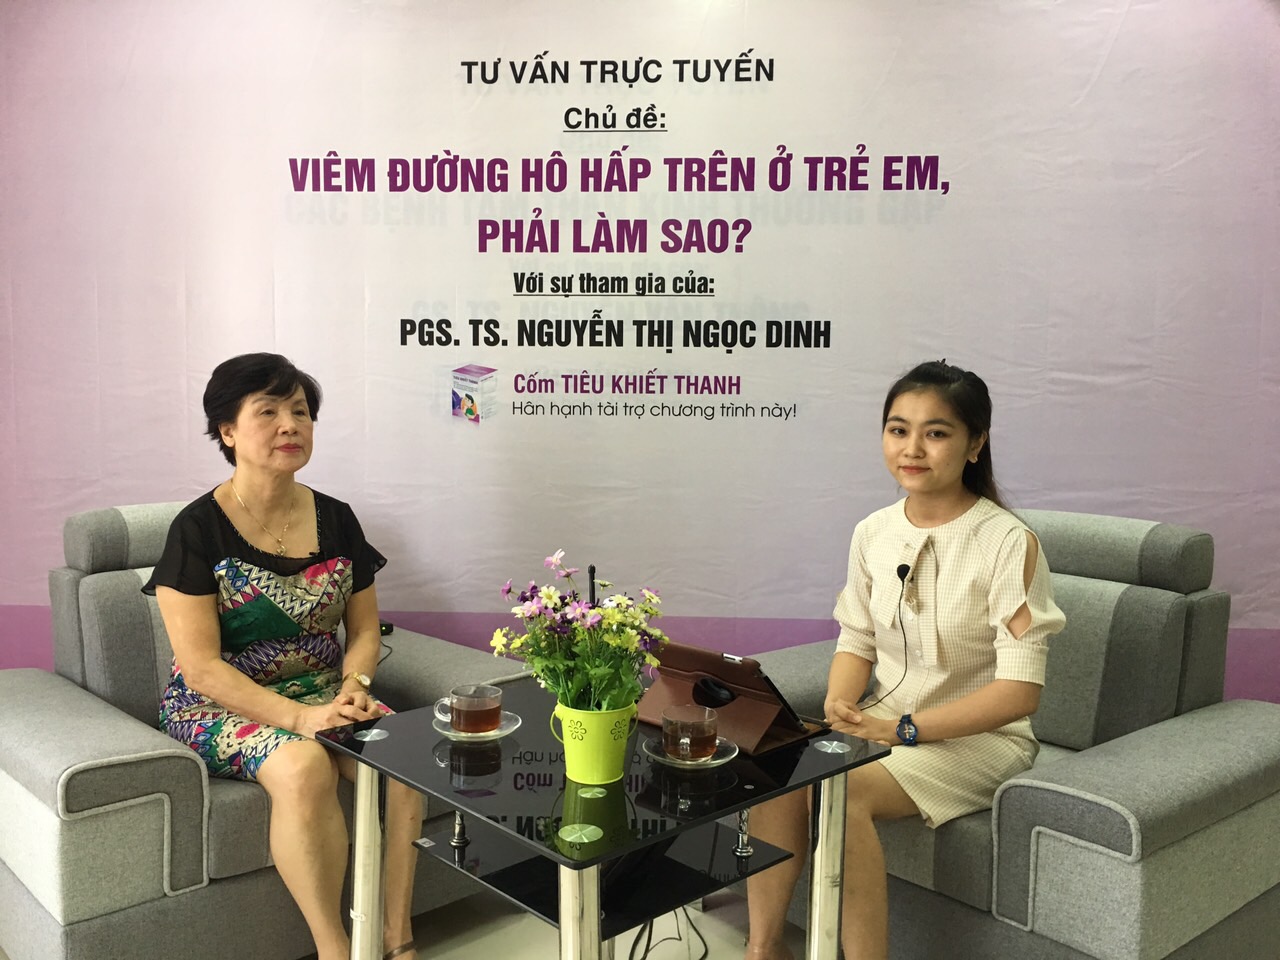 Giao lưu trực tuyến cùng chuyên gia Nguyễn Thị Ngọc Dinh